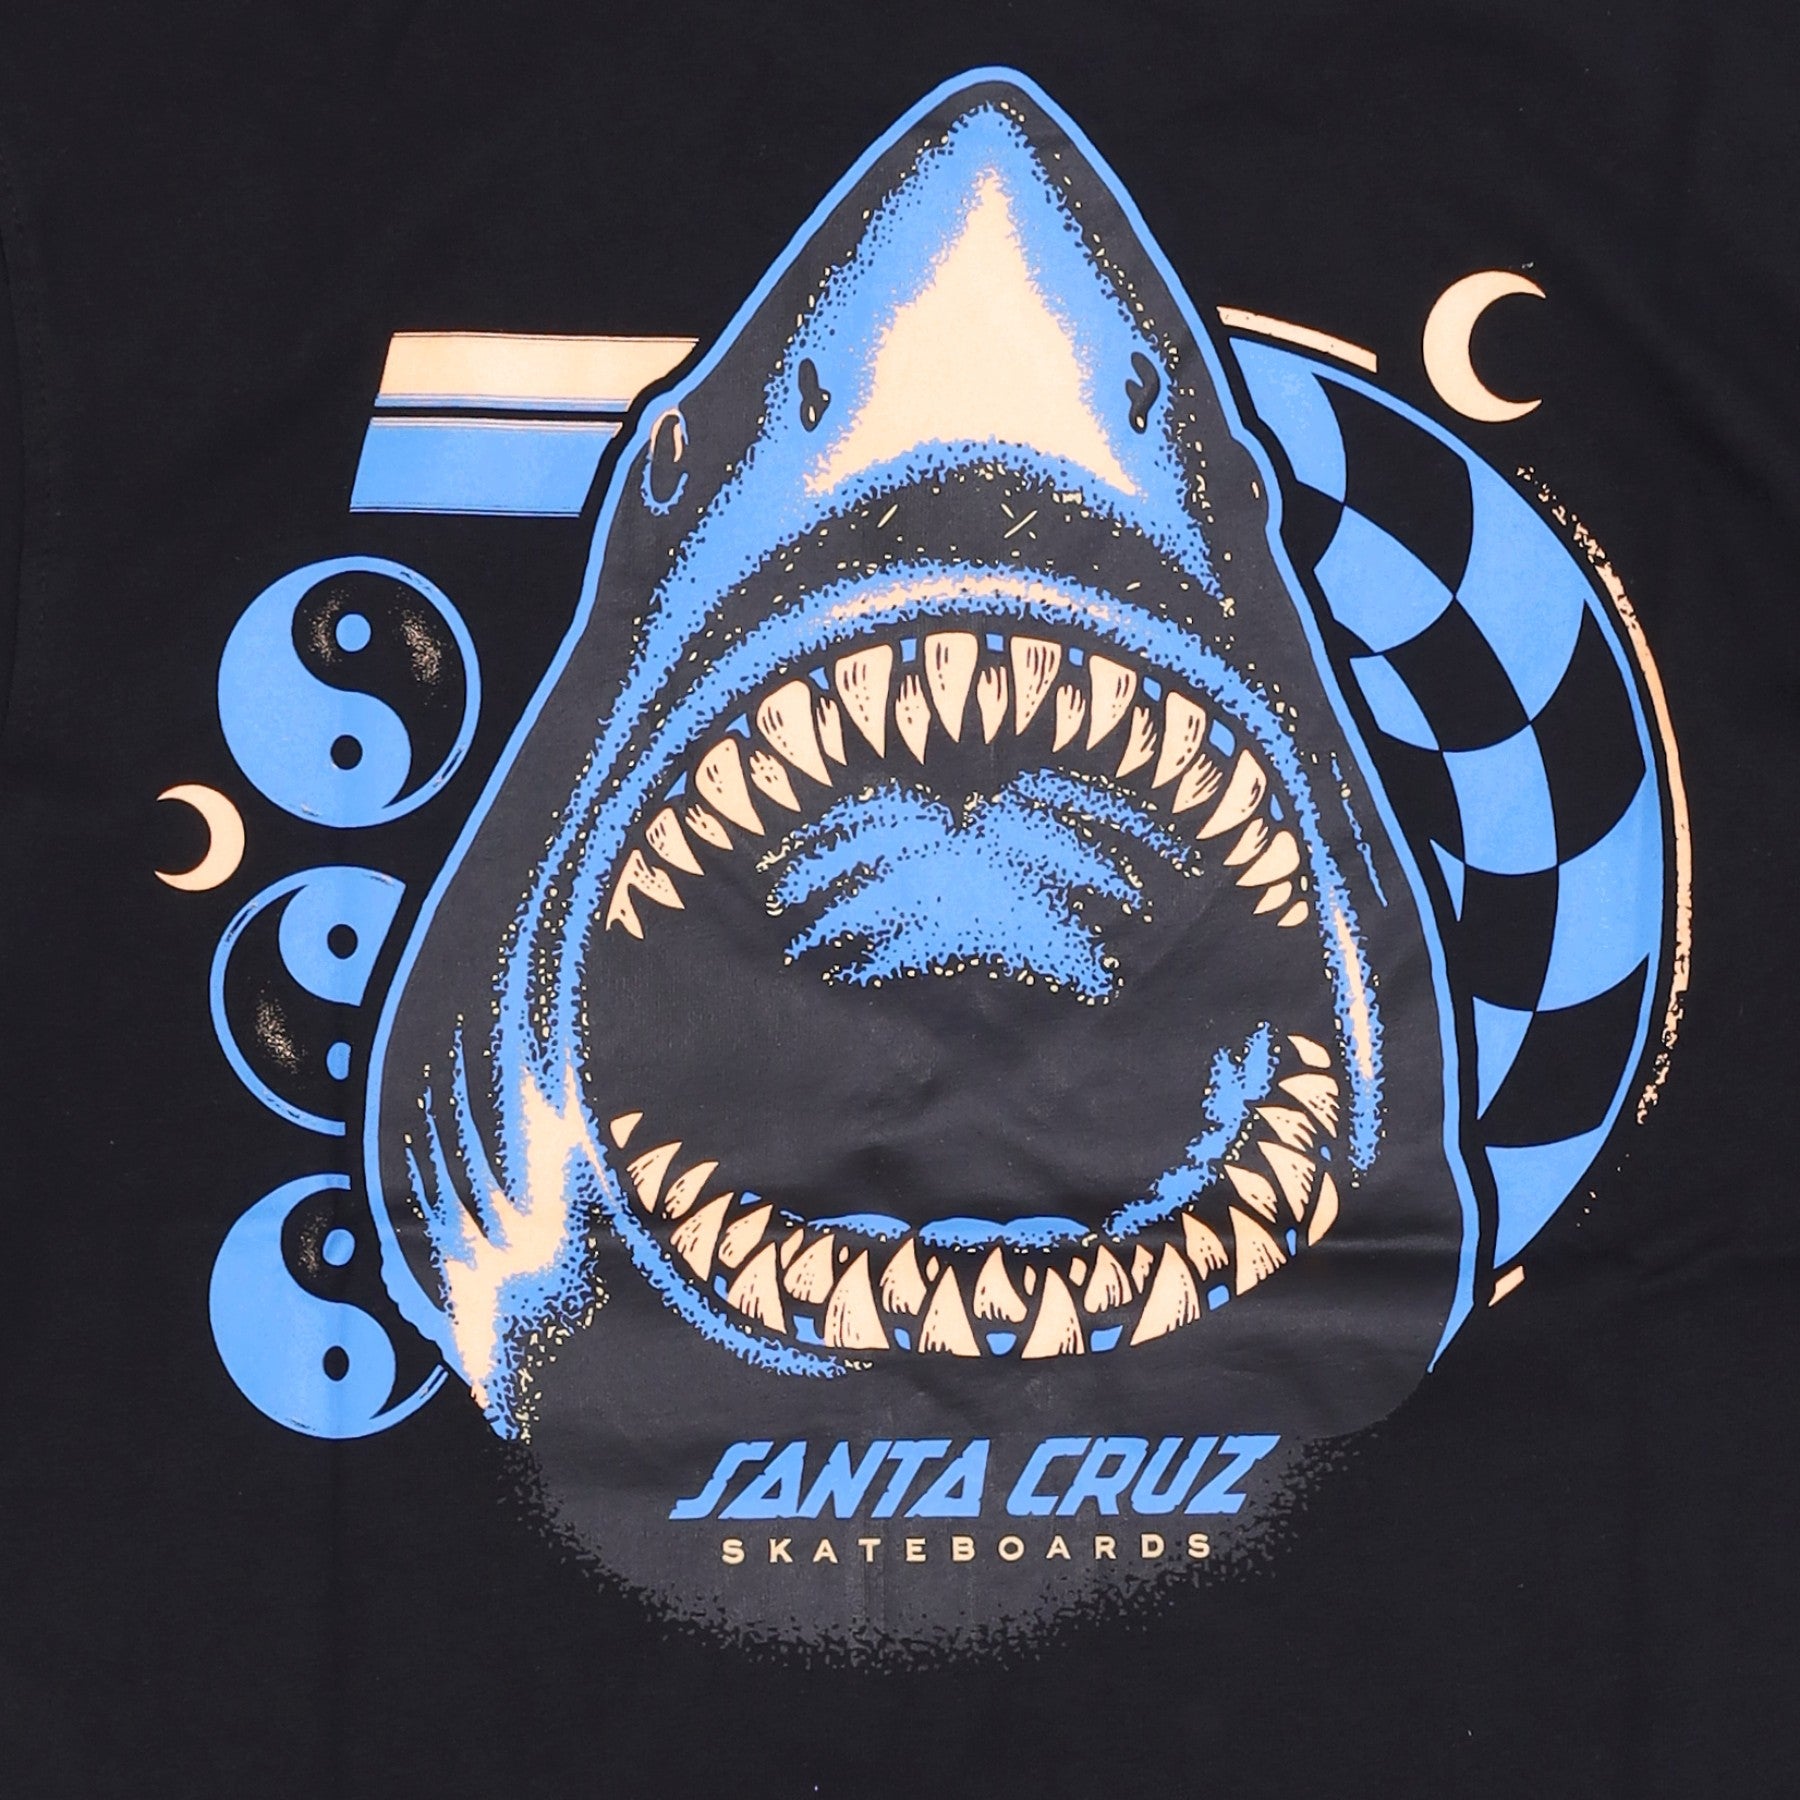 Shark Trip Tee Men's T-Shirt